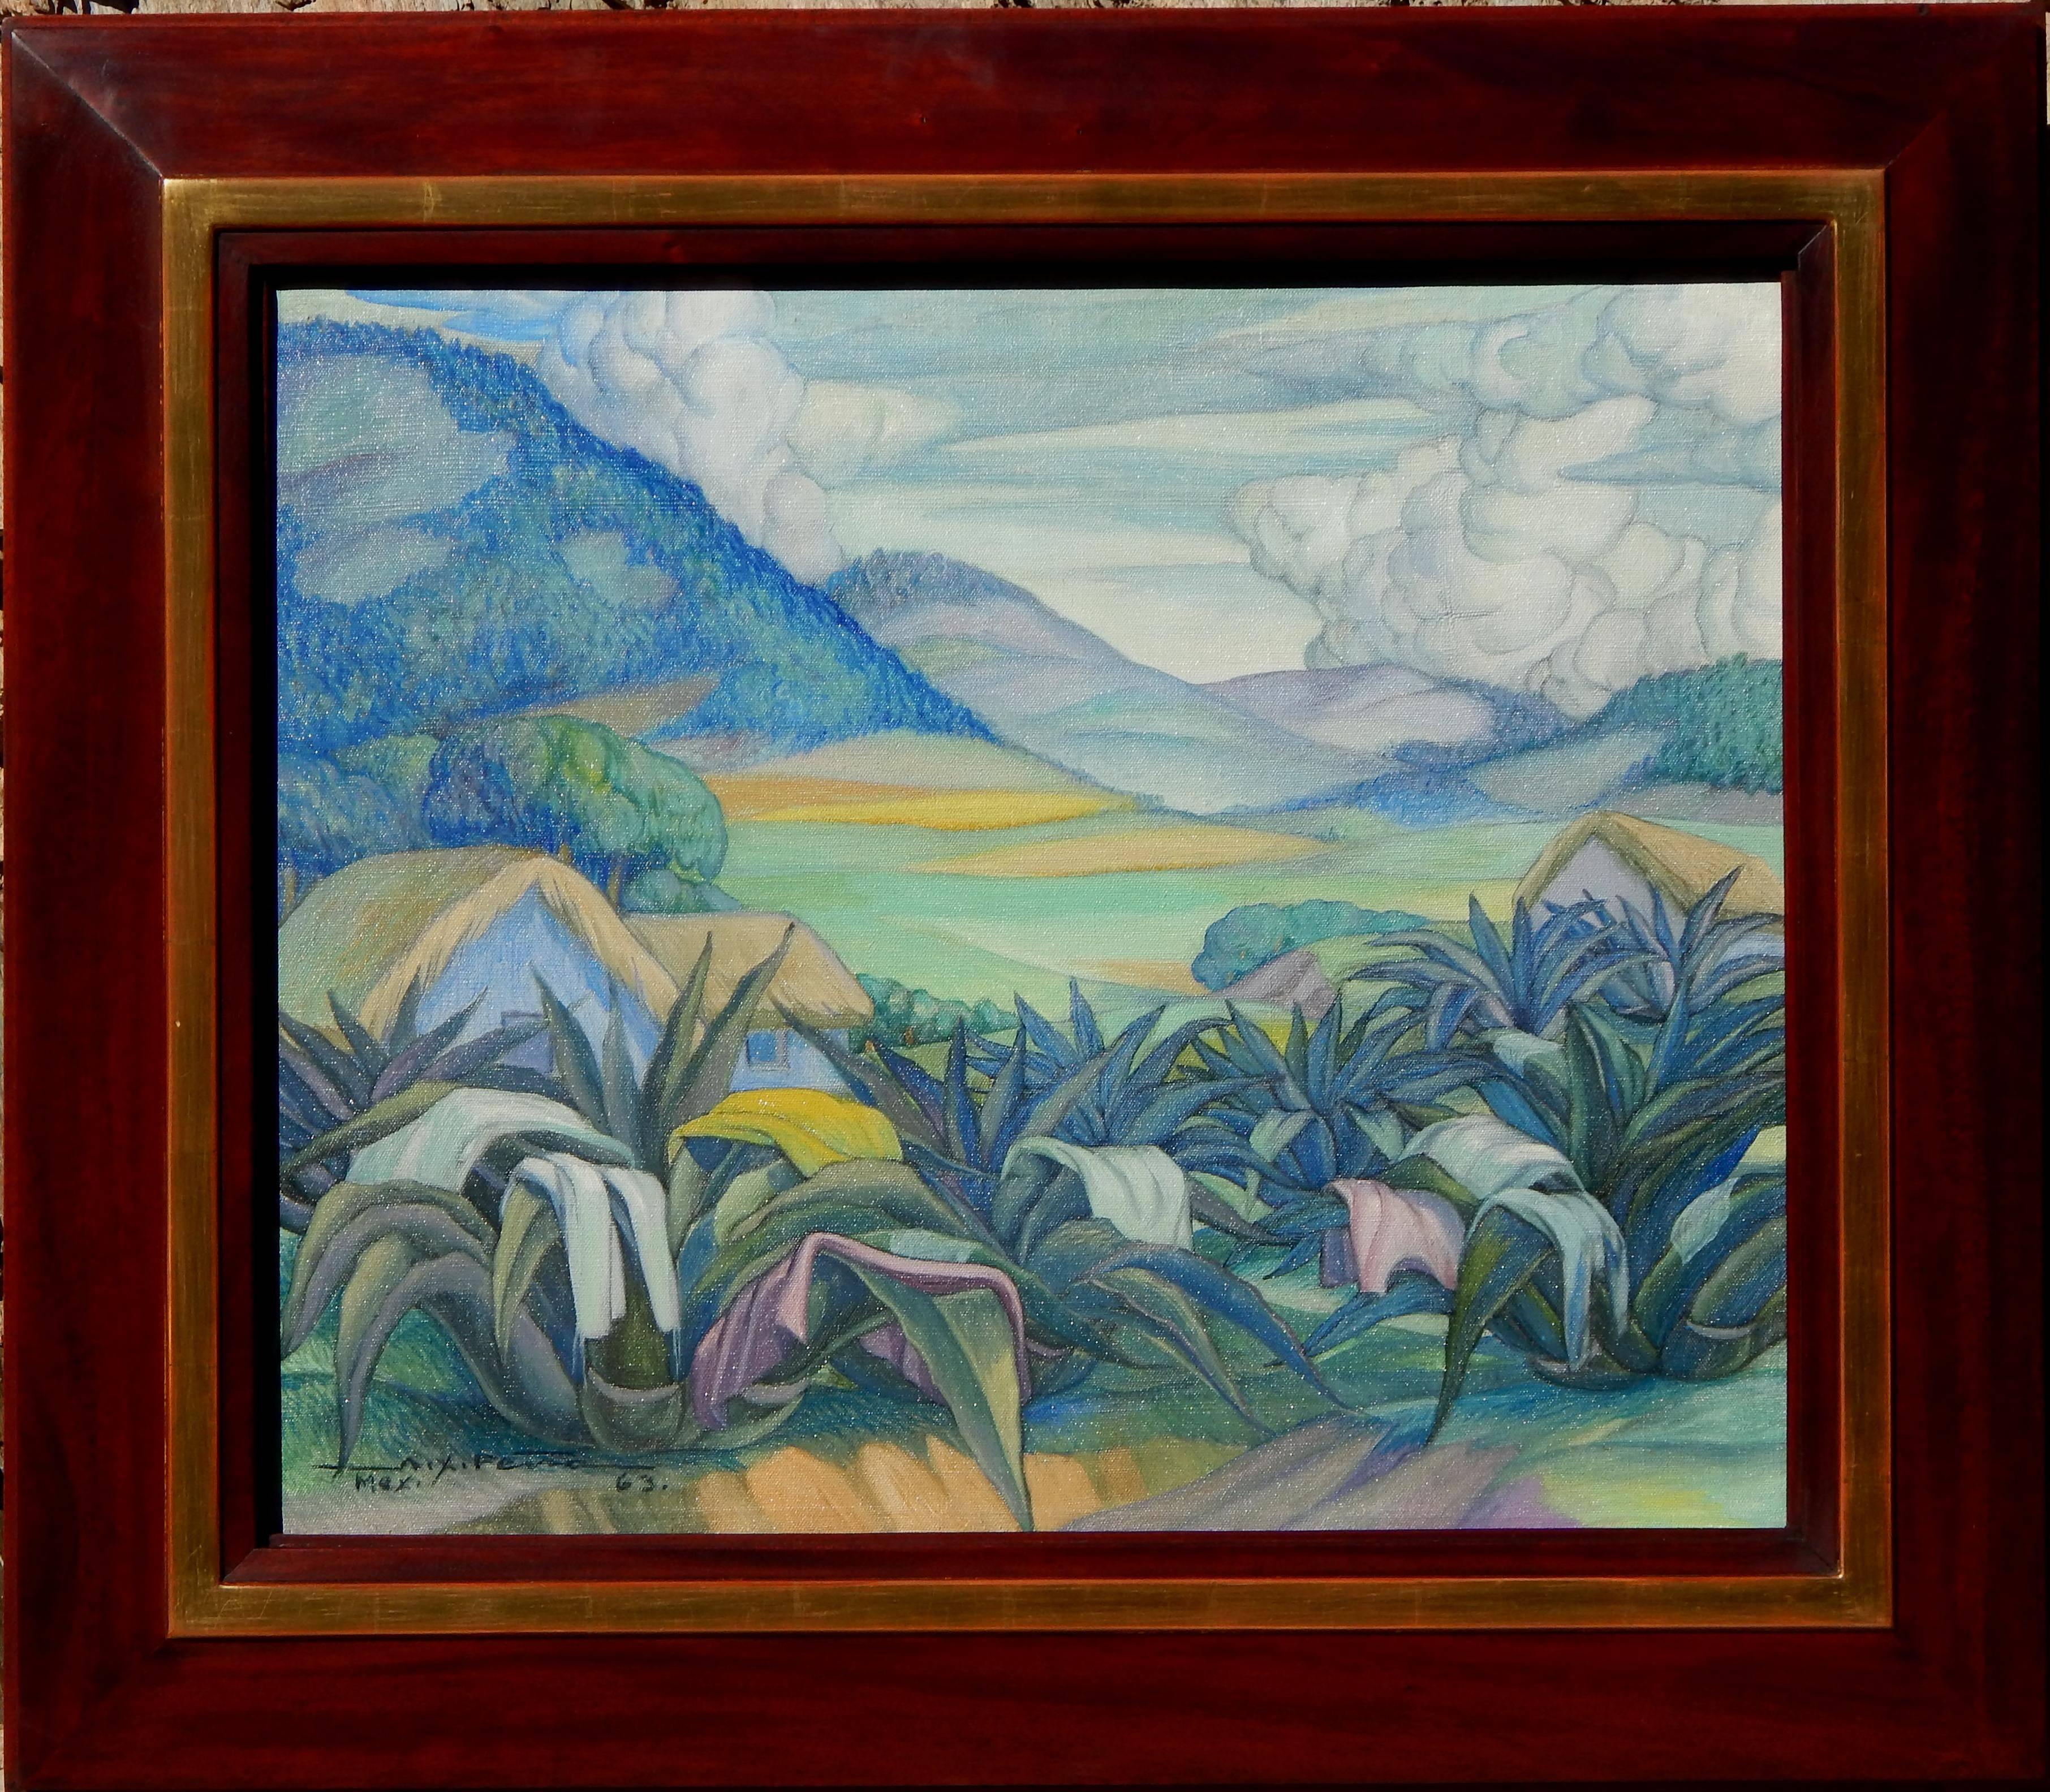 Magnifique paysage mexicain peint par Alfonso Pena
Huile sur toile créée en 1963. Sujet mexicain.
Excellent état, non encadré.
Mesures : 19 3/4